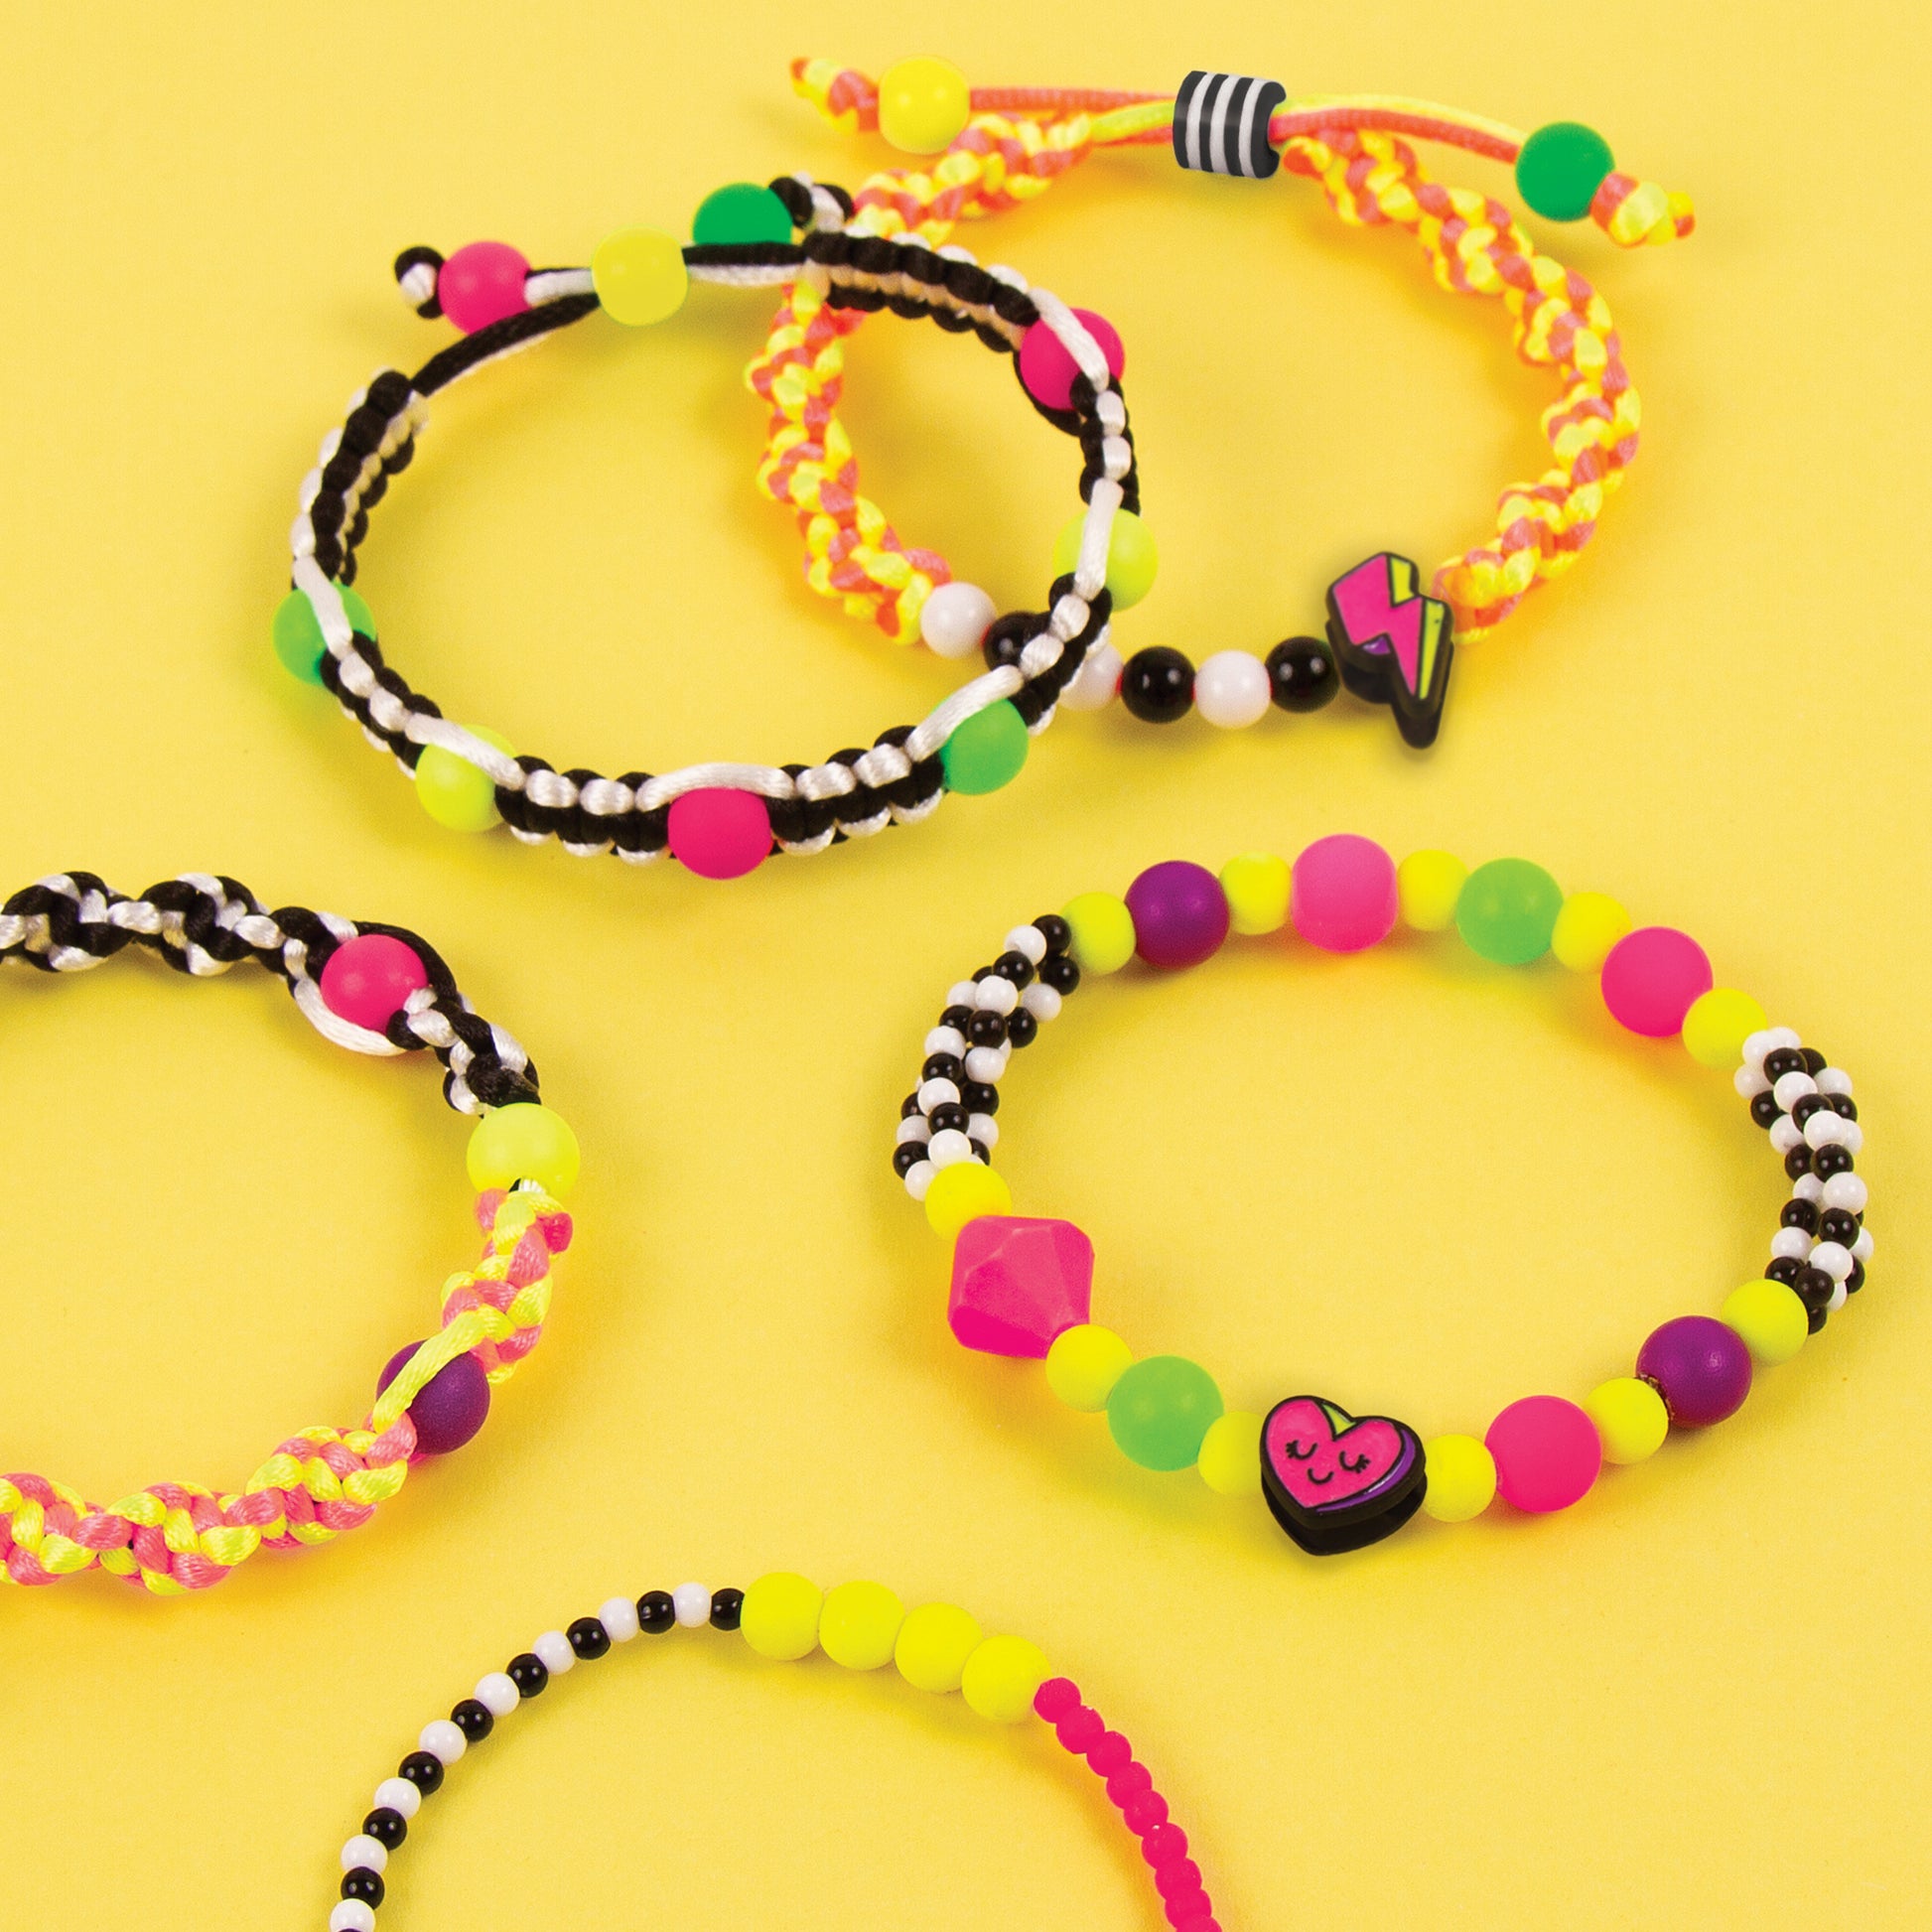 Make It Real les bracelets font les filles en or/néon 180 pièces - Autres  Jeux créatifs - Achat & prix